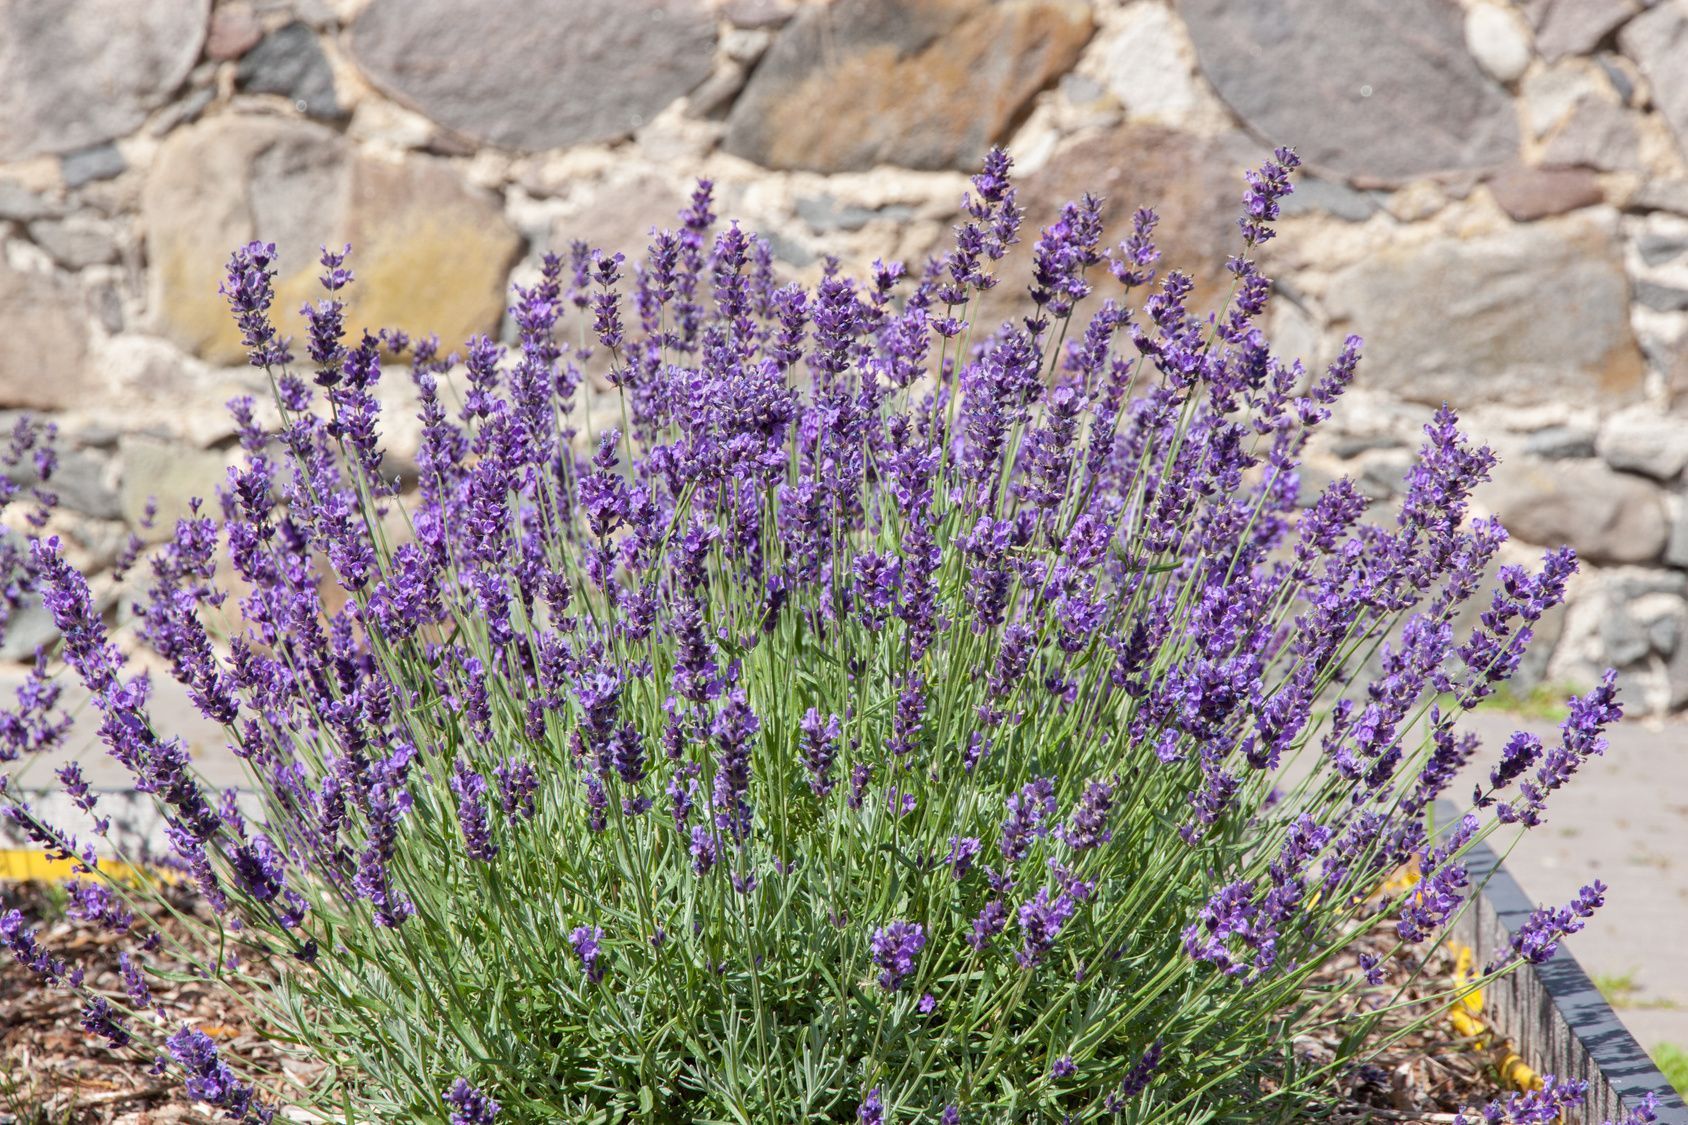 Lavendel-Pflanzen fühlen sich im Schutze von Mauern besonders wohl. Denn diese strahlen zusätzlich Wärme ab. Ist der Boden dann noch leicht abschüssig, haben Sie in Sachen Standortwahl alles richtig gemacht.